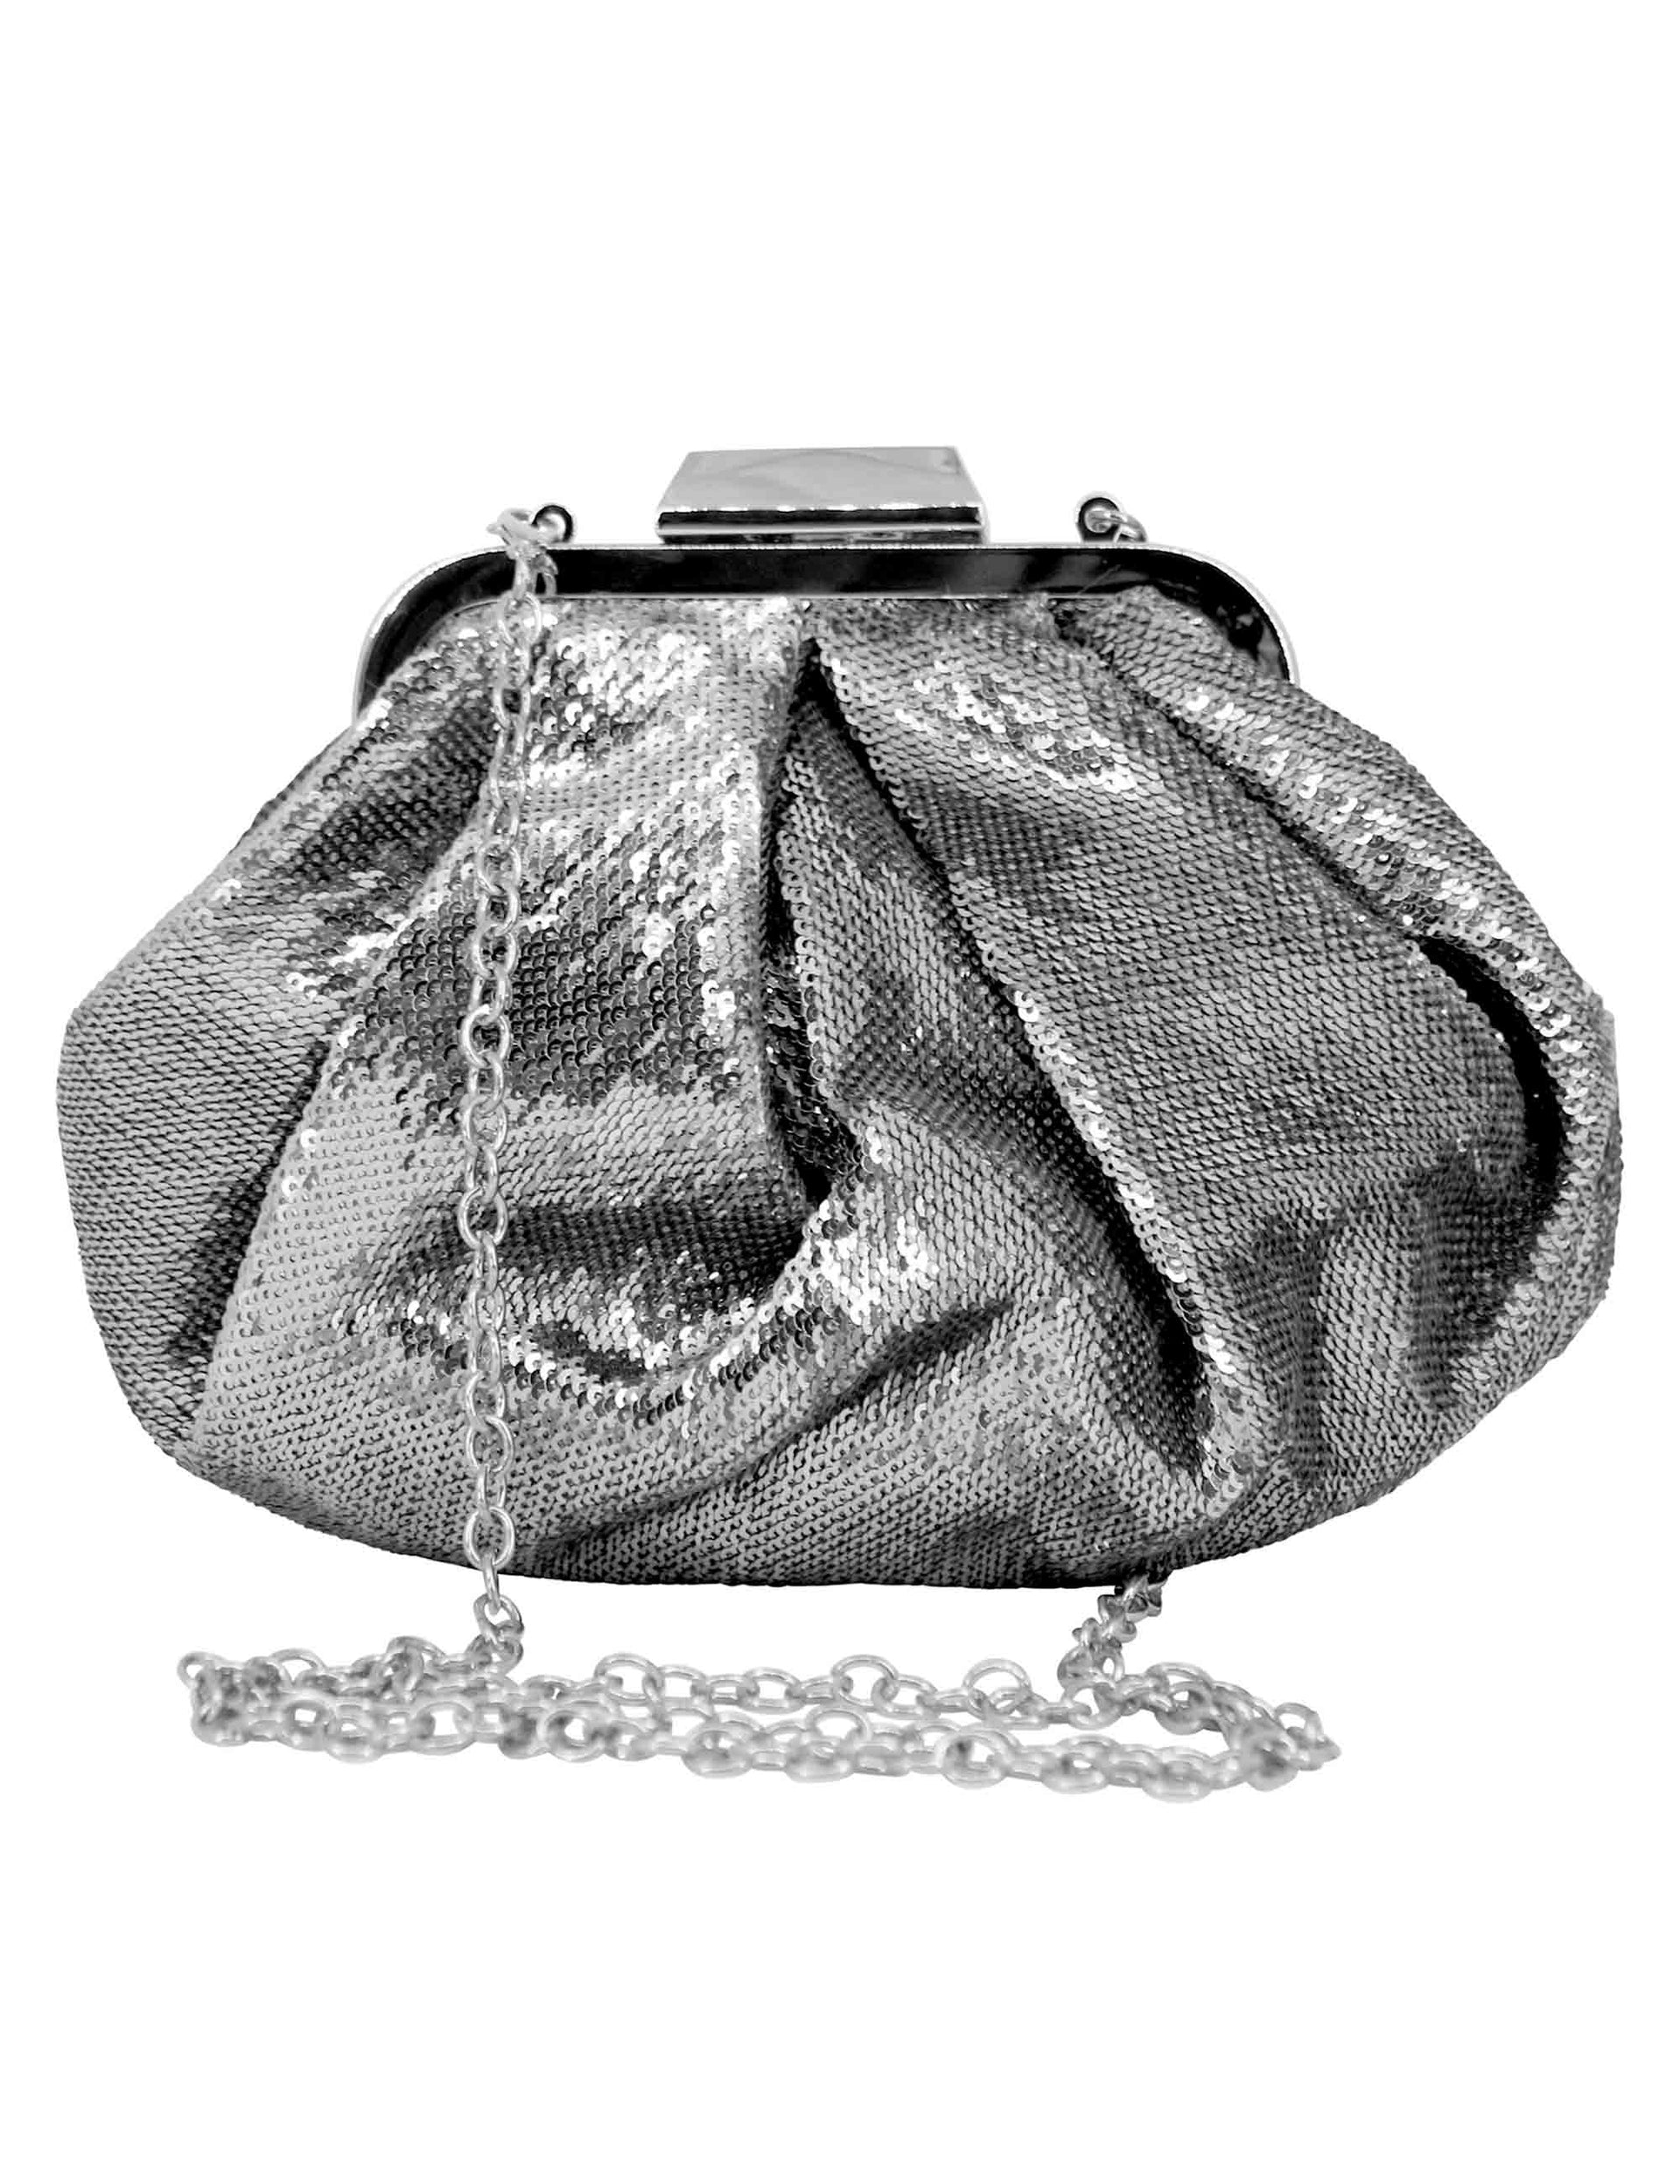 Borse pochette donna in tessuto laminto argento con tracolla in catena